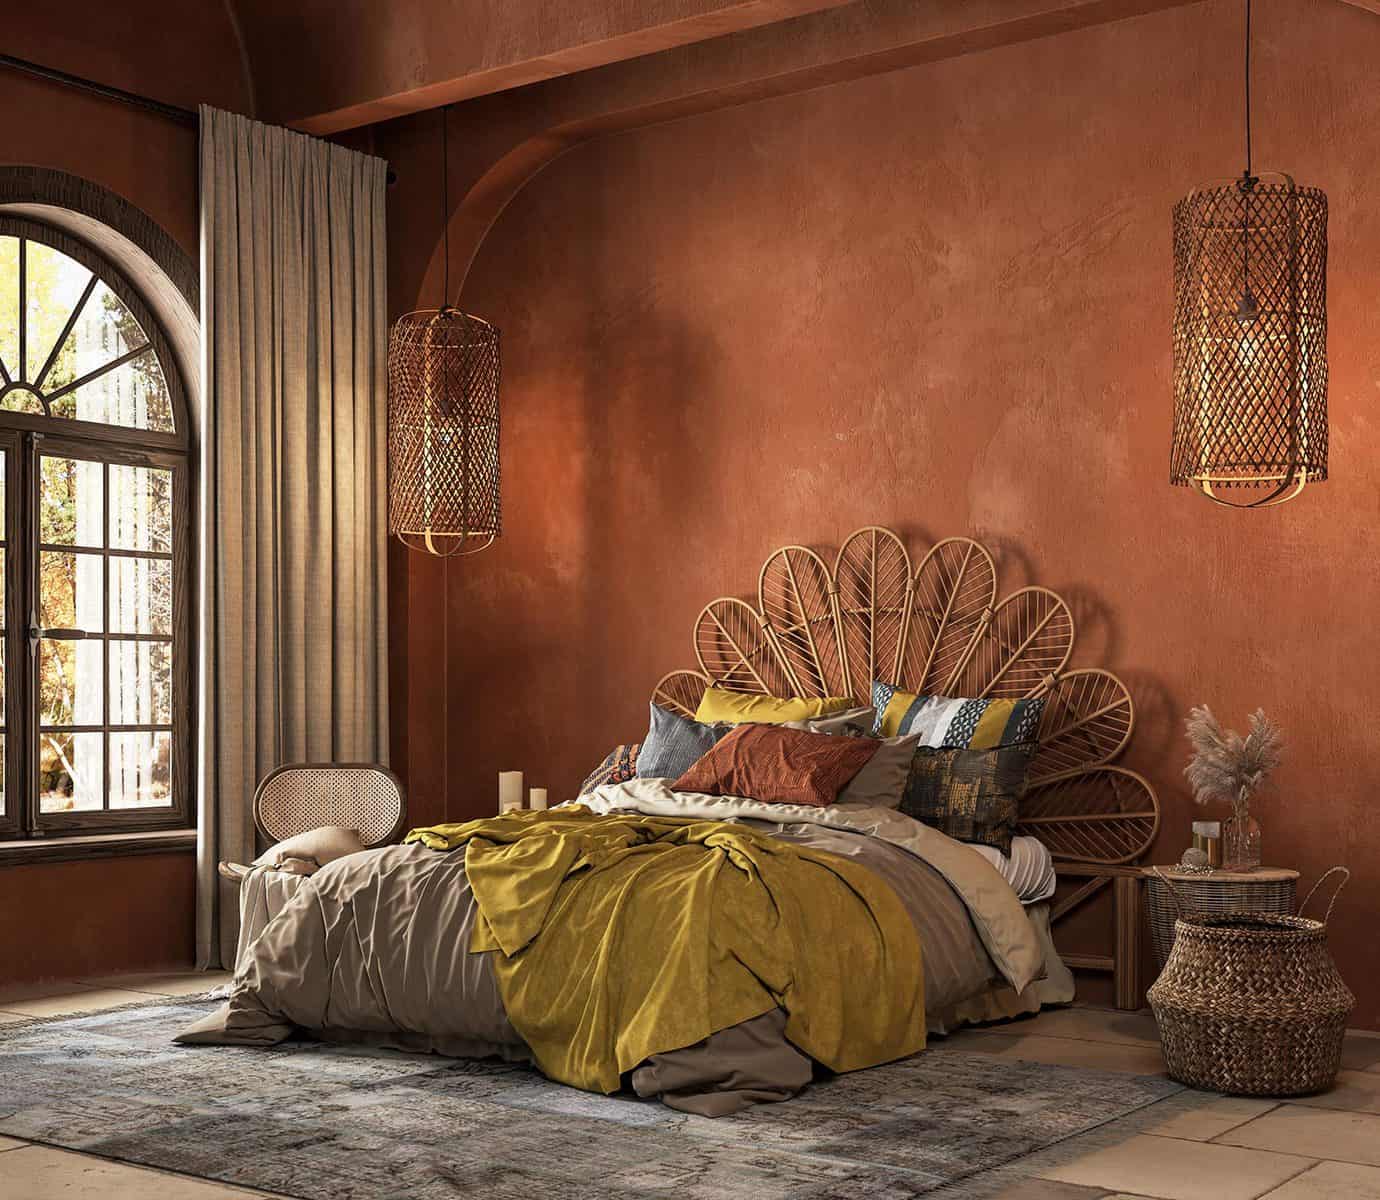 Orange boho style bedroom interior with armchair